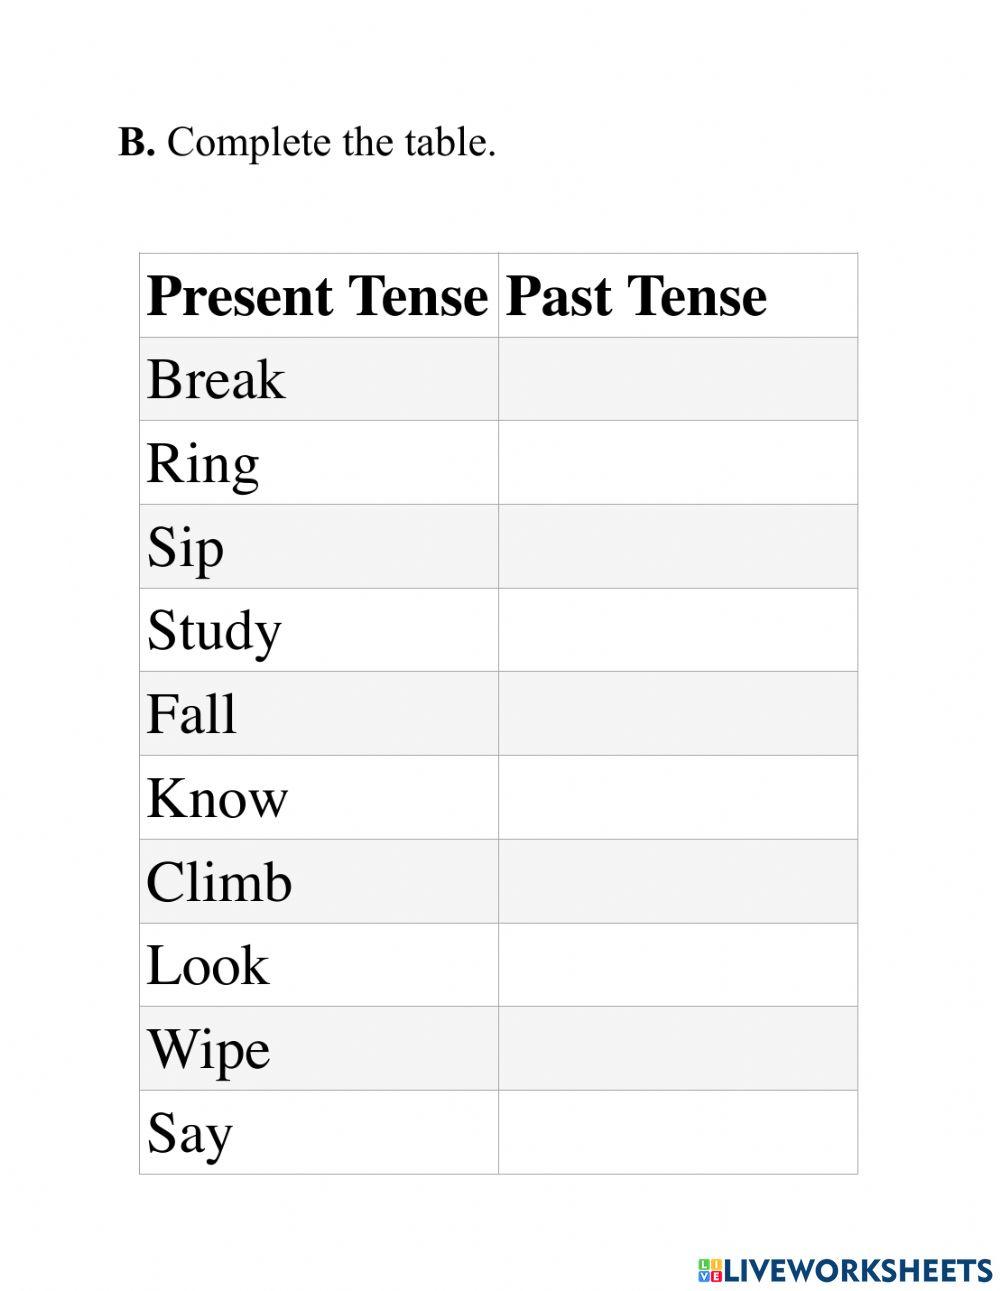 Present tense past tense past participle words list pdf | Word list,  English grammar pdf, Simple past tense